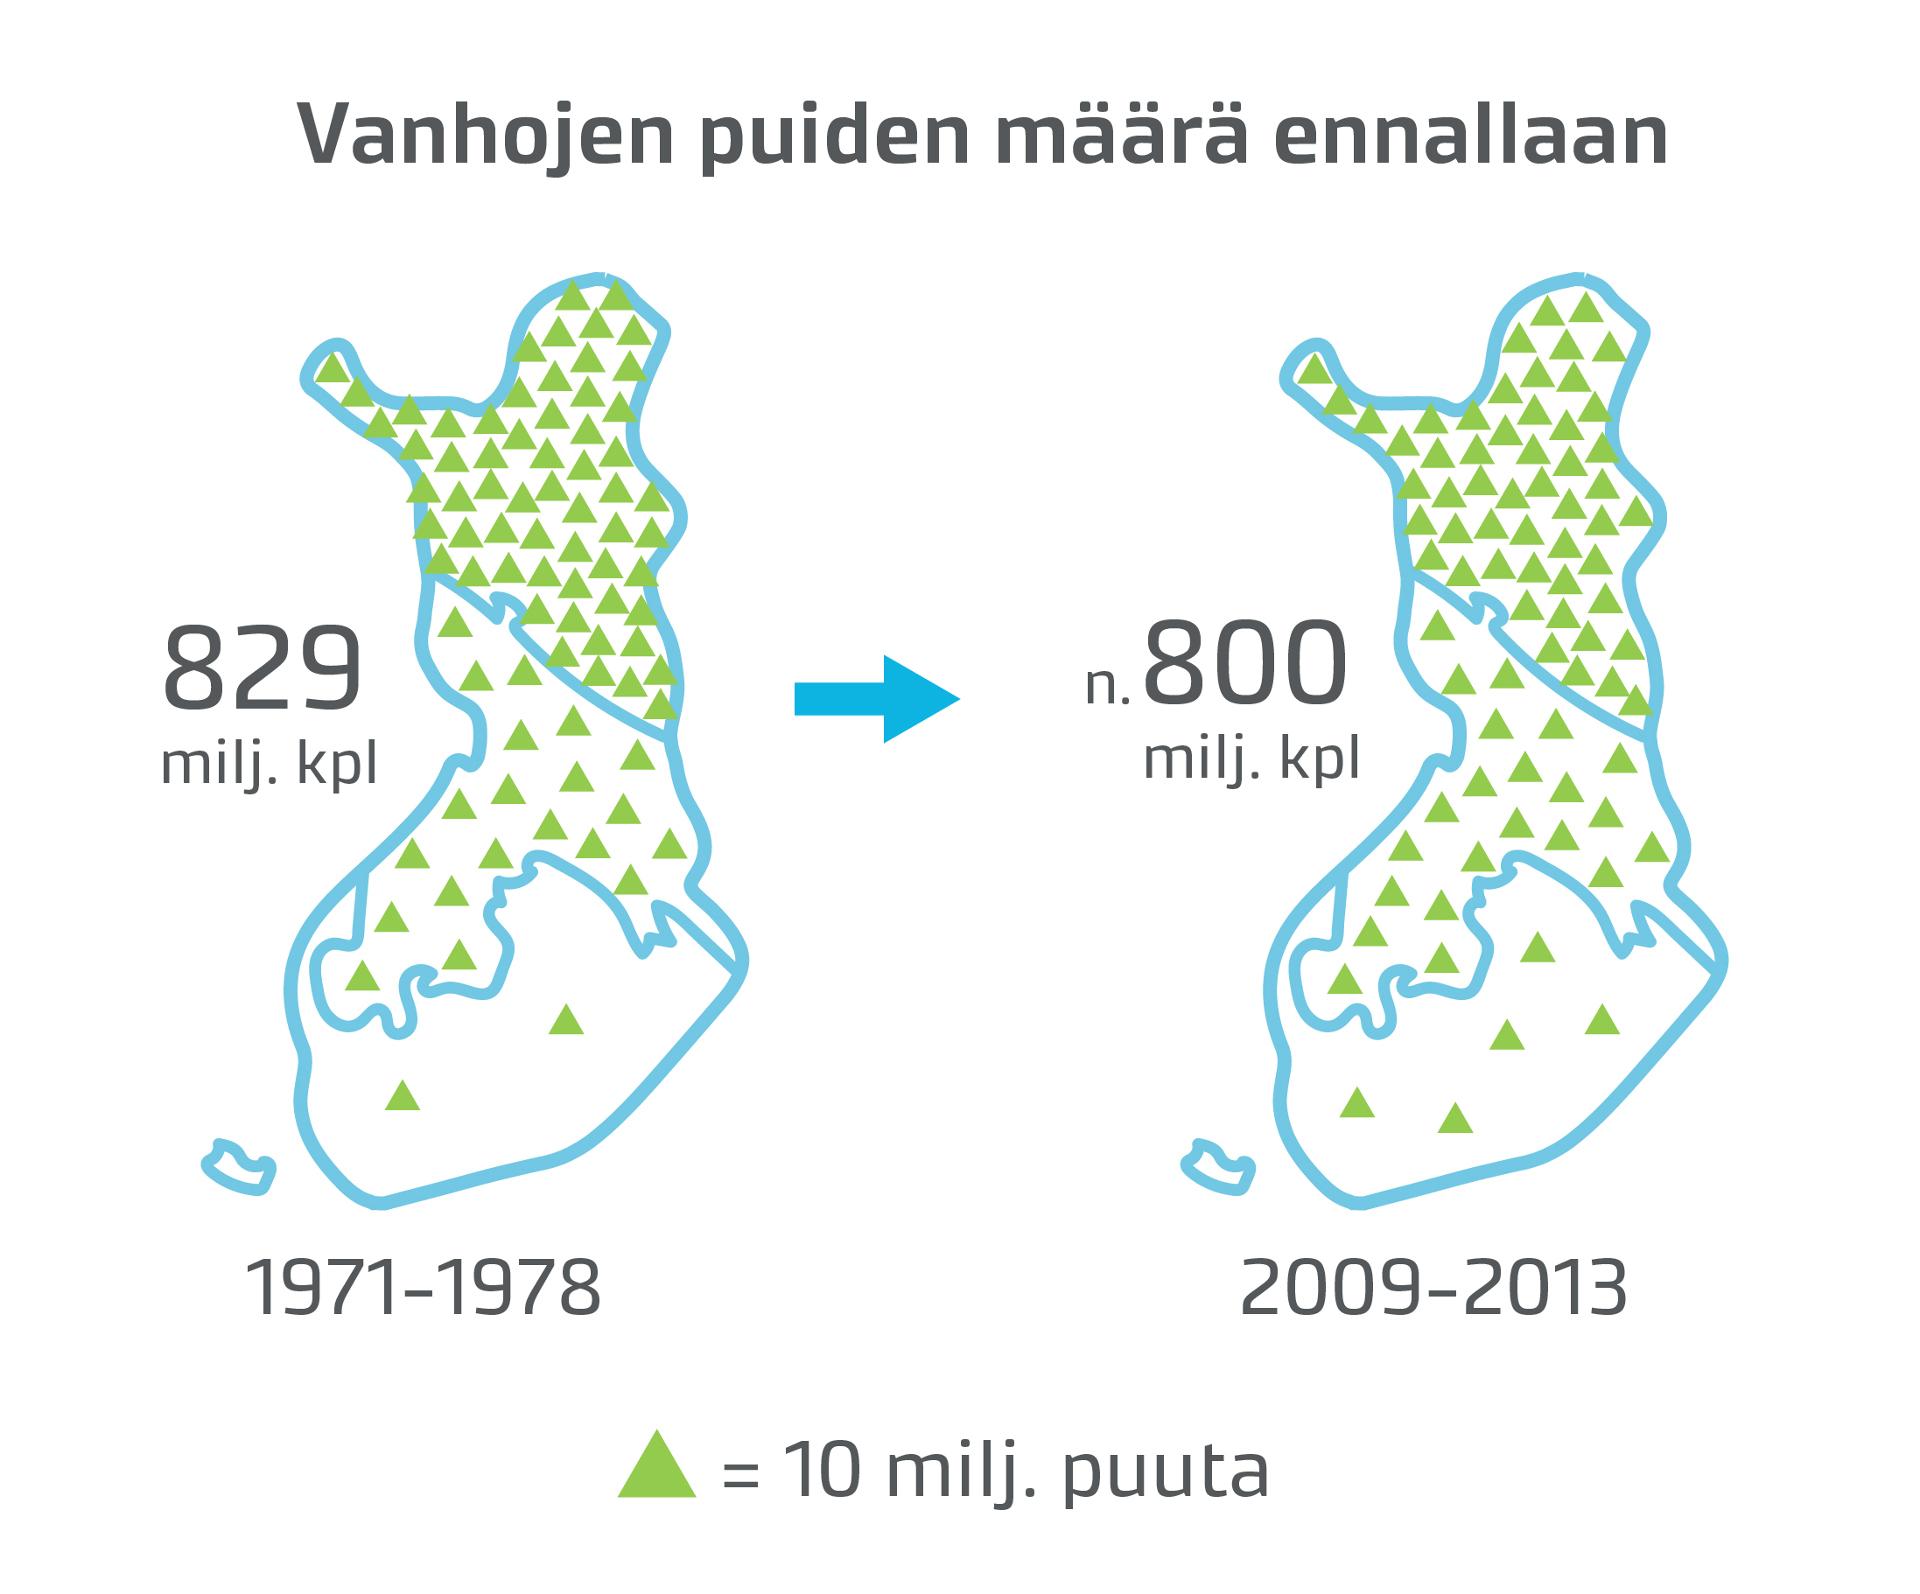 Ylivoimaisesti suurin osa vanhoista puista on pohjoisimmassa Suomessa. Enin osa niistä on läpimitaltaan melko pieniä.